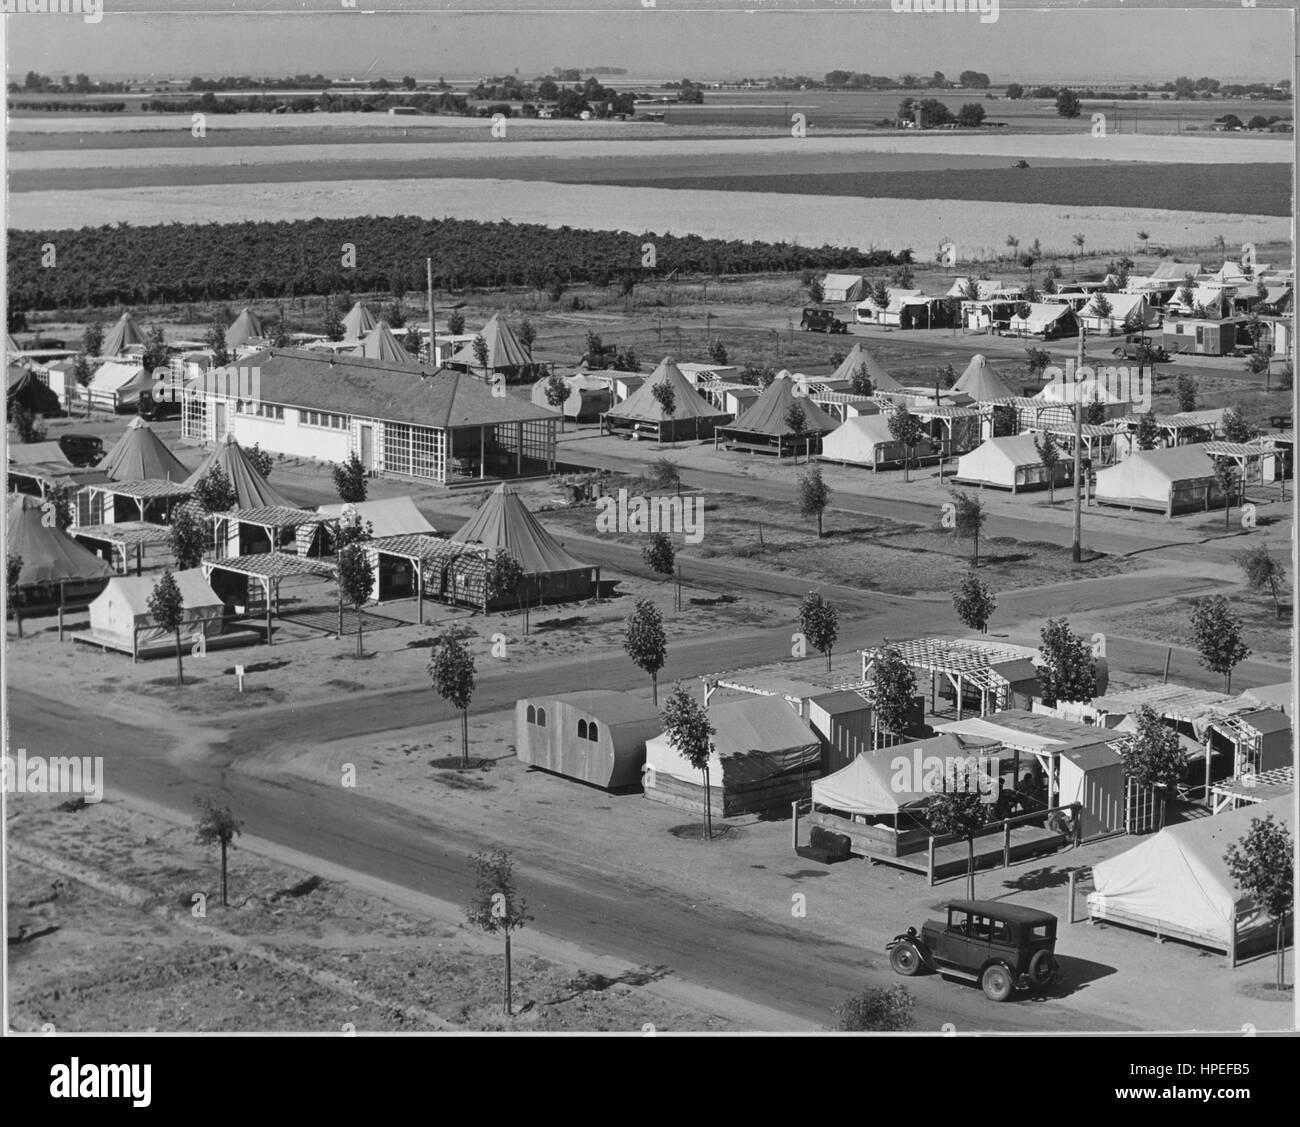 Fotografia di tende e strutture che compongono la fattoria Shafter labour camp, Kern County, California, Giugno 1939. Immagine cortesia Dorothea Lange/US National Archives. Foto Stock